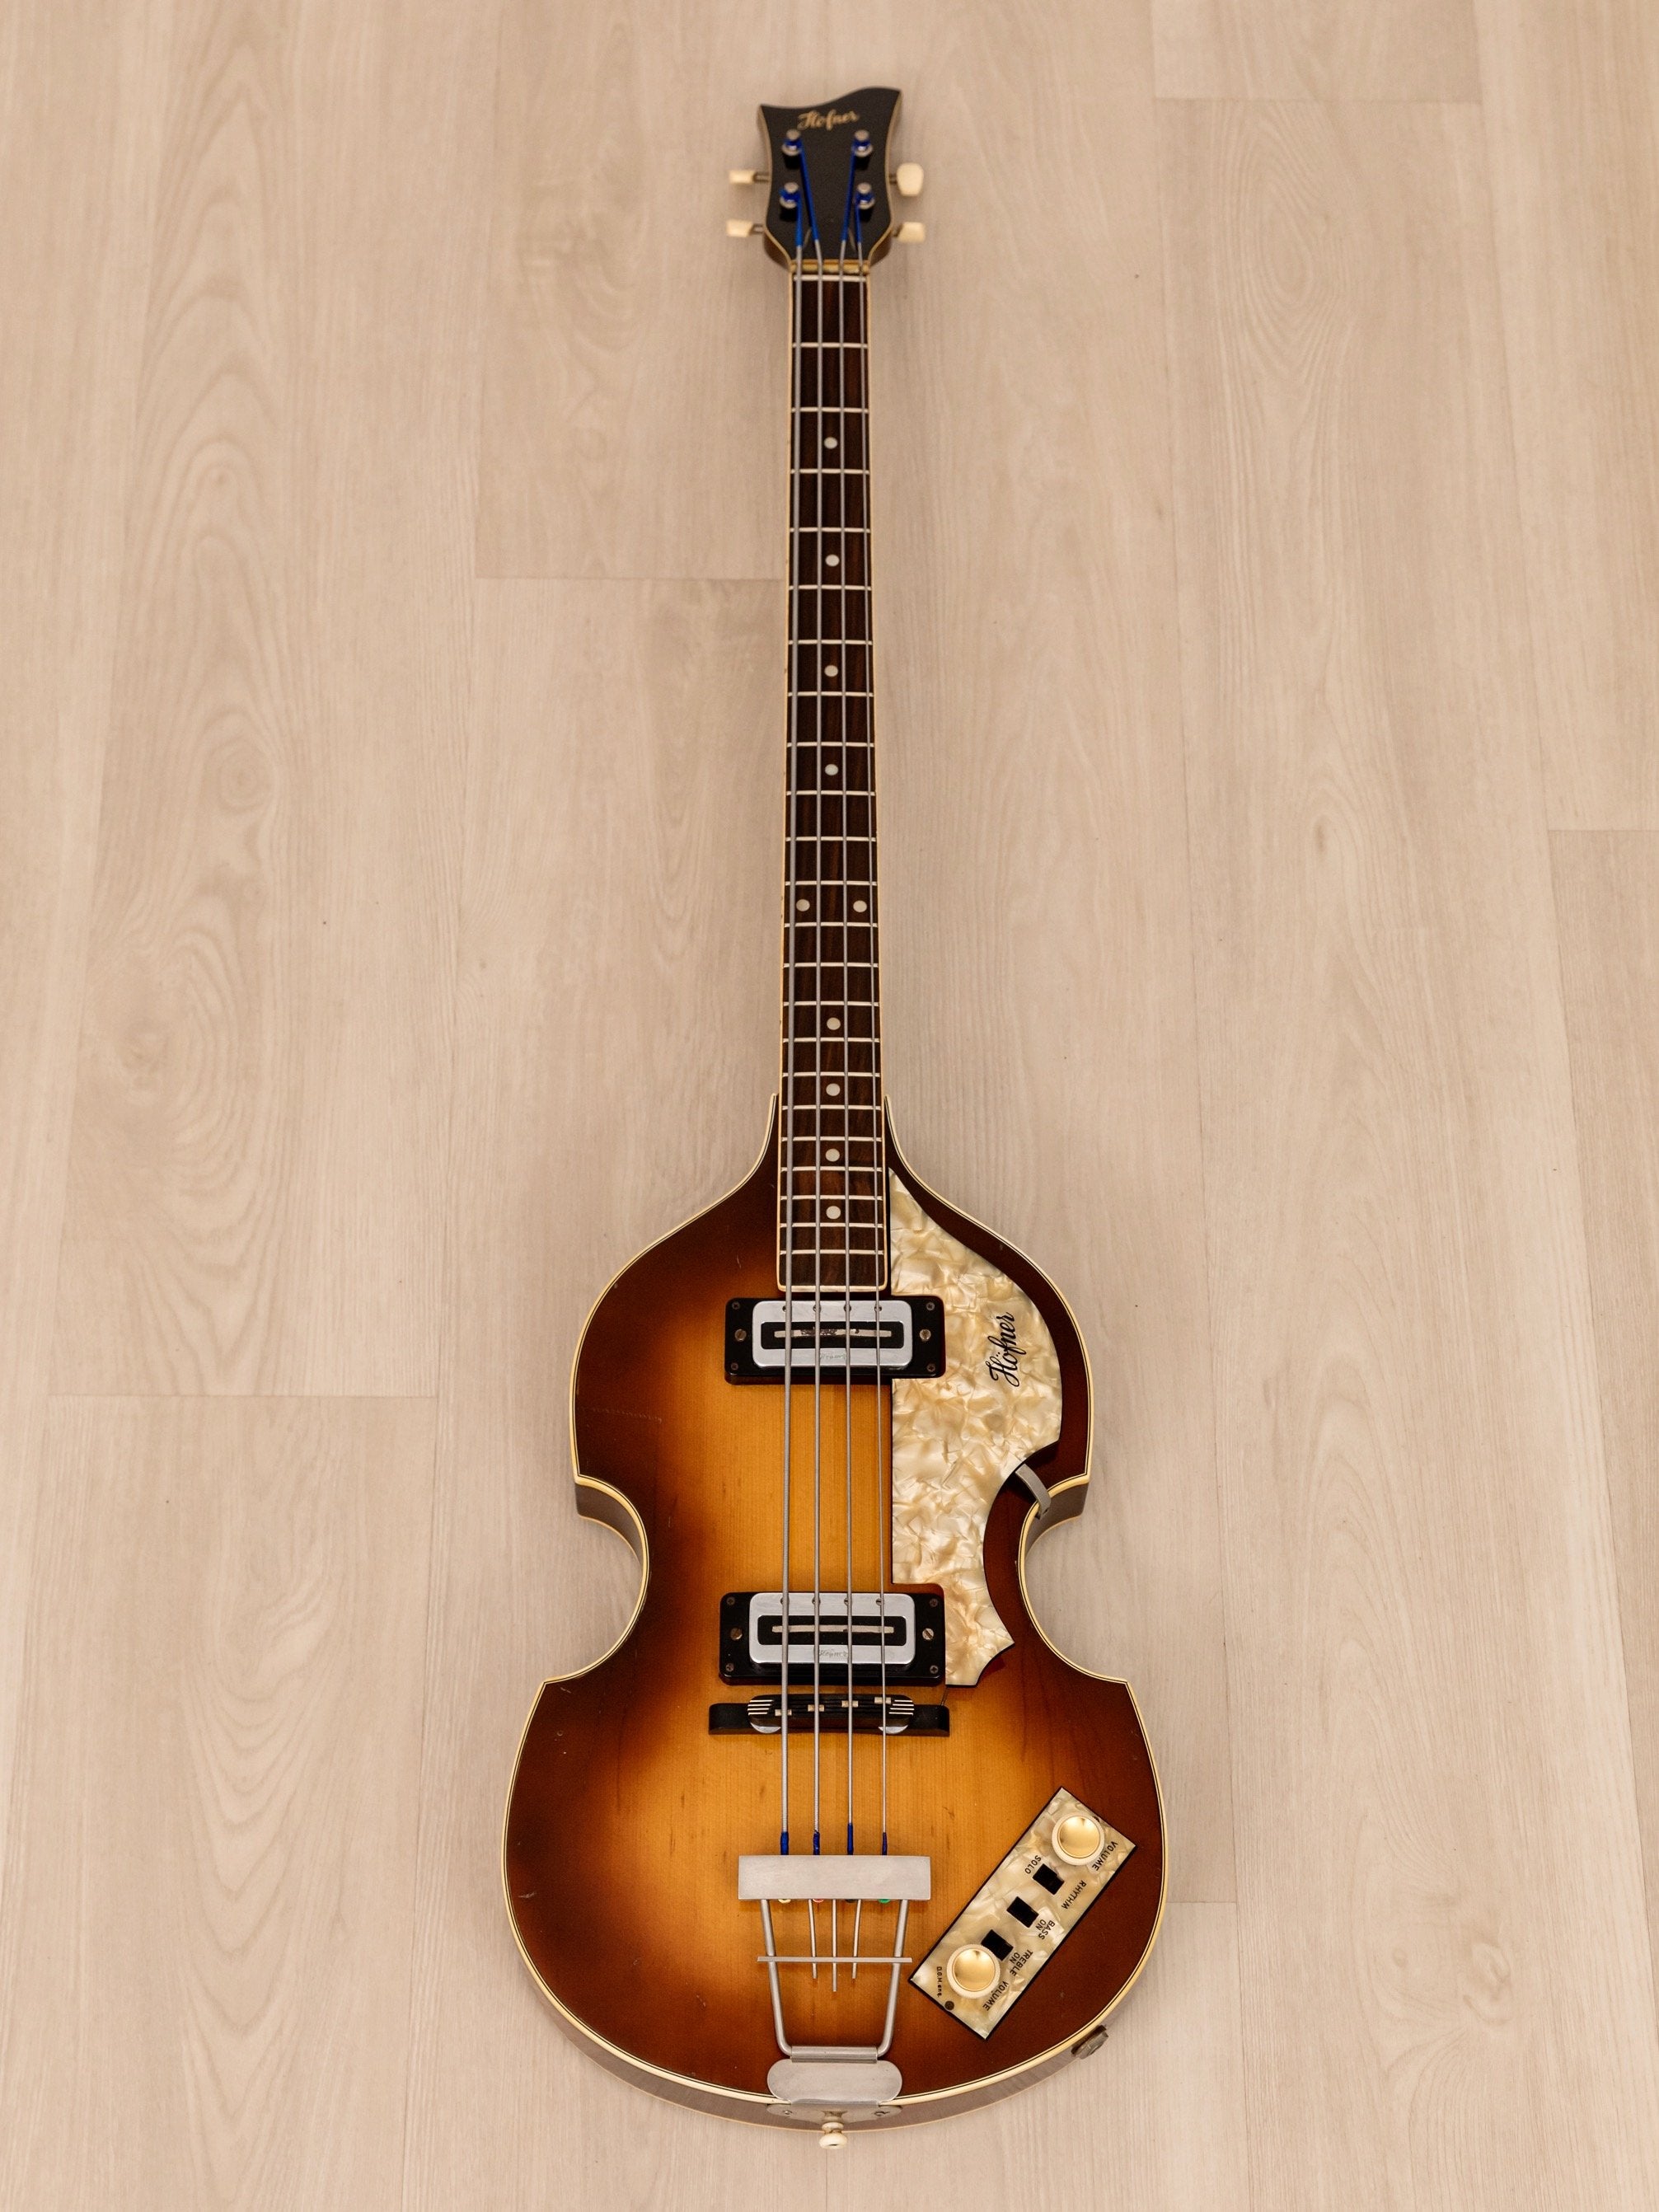 1973 Hofner 500/1 Beatle Bass Vintage Violin Bass 100% Original w/ Blade Pickups, Case